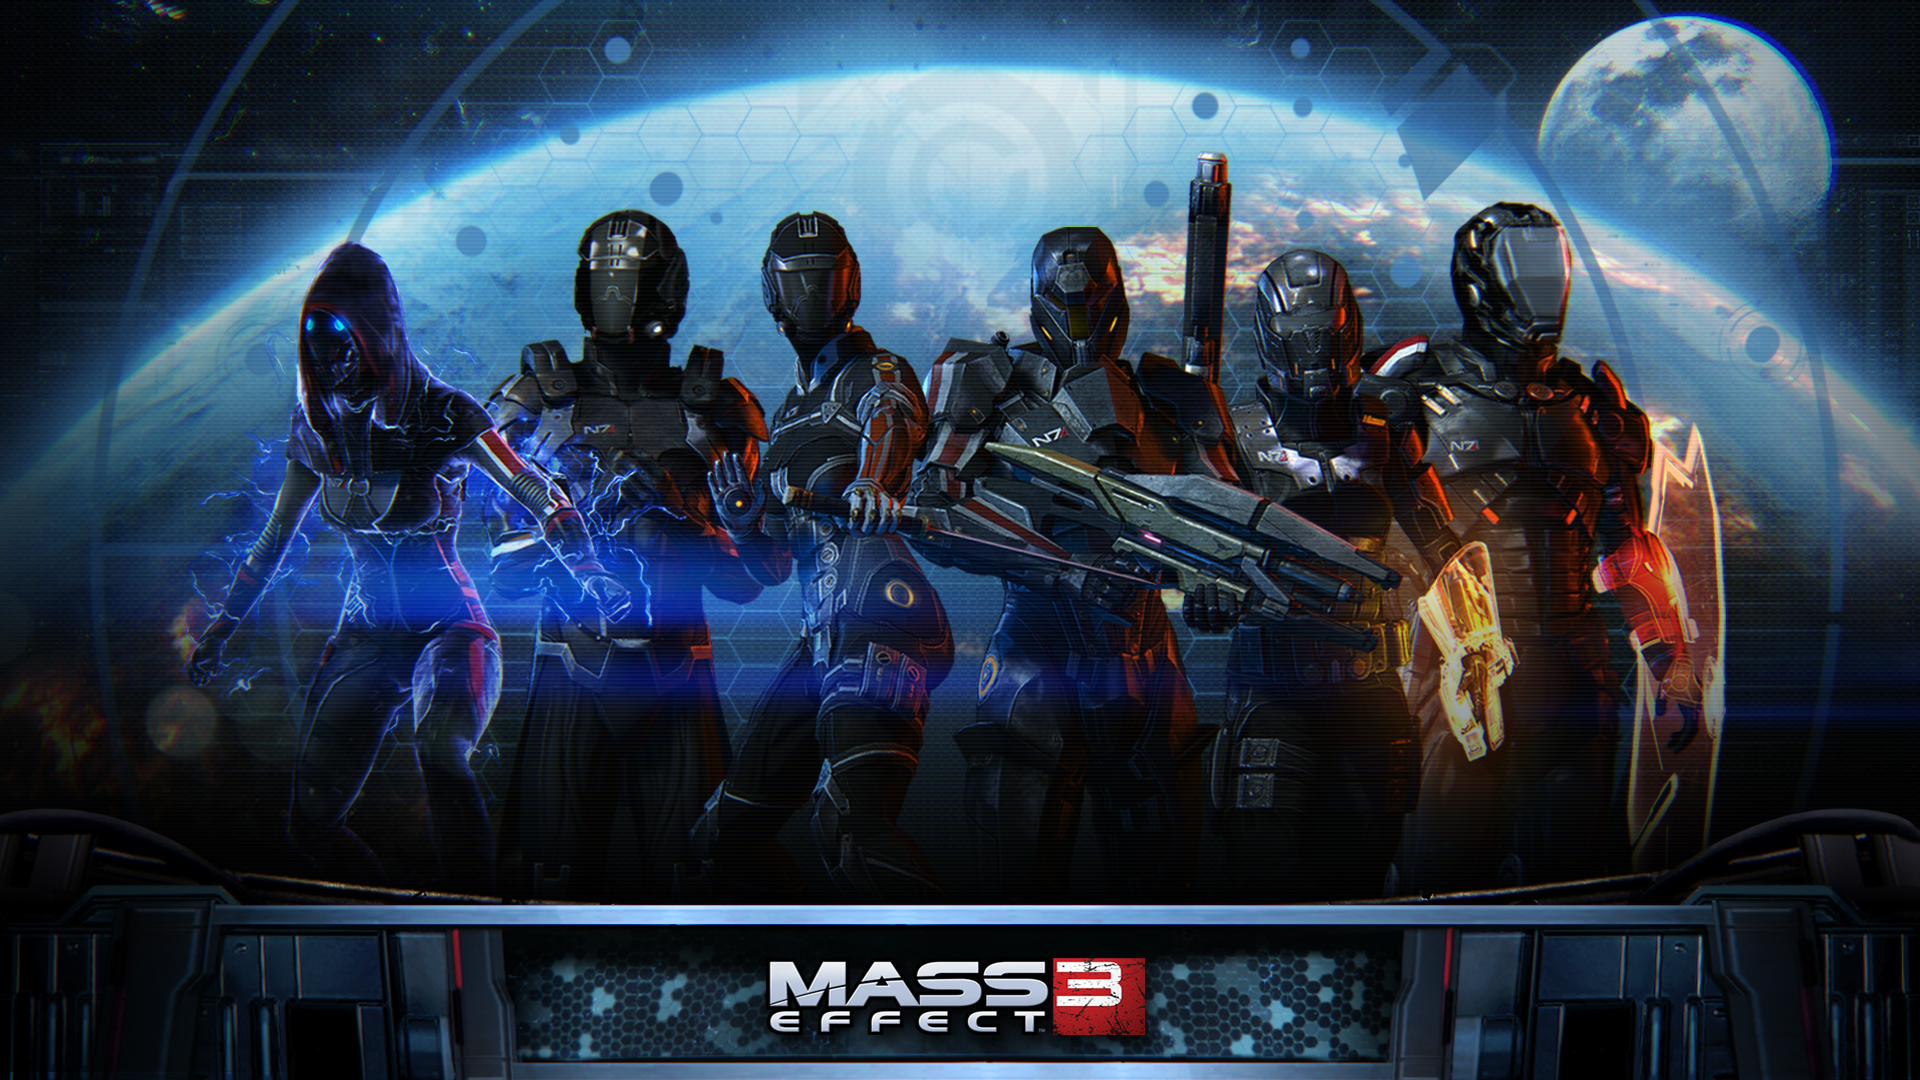 Mass Effect 3 Background - 1920x1080 Wallpaper 